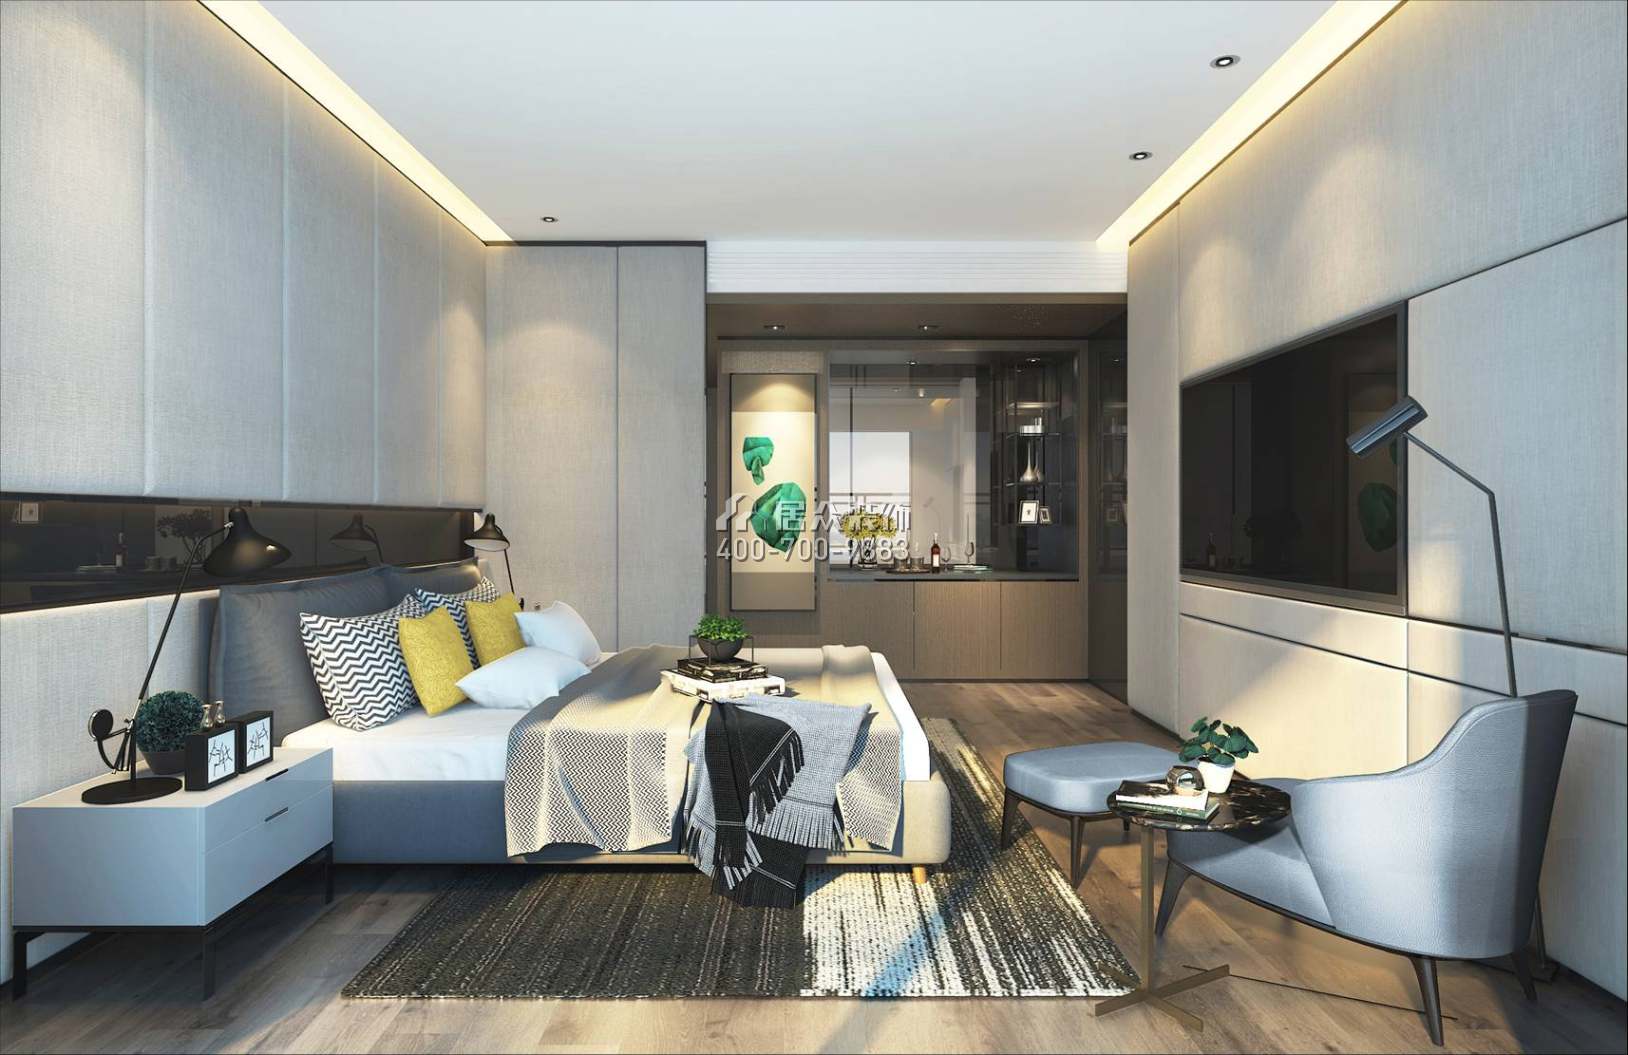 美的君蘭江山300平方米現代簡約風格平層戶型臥室裝修效果圖